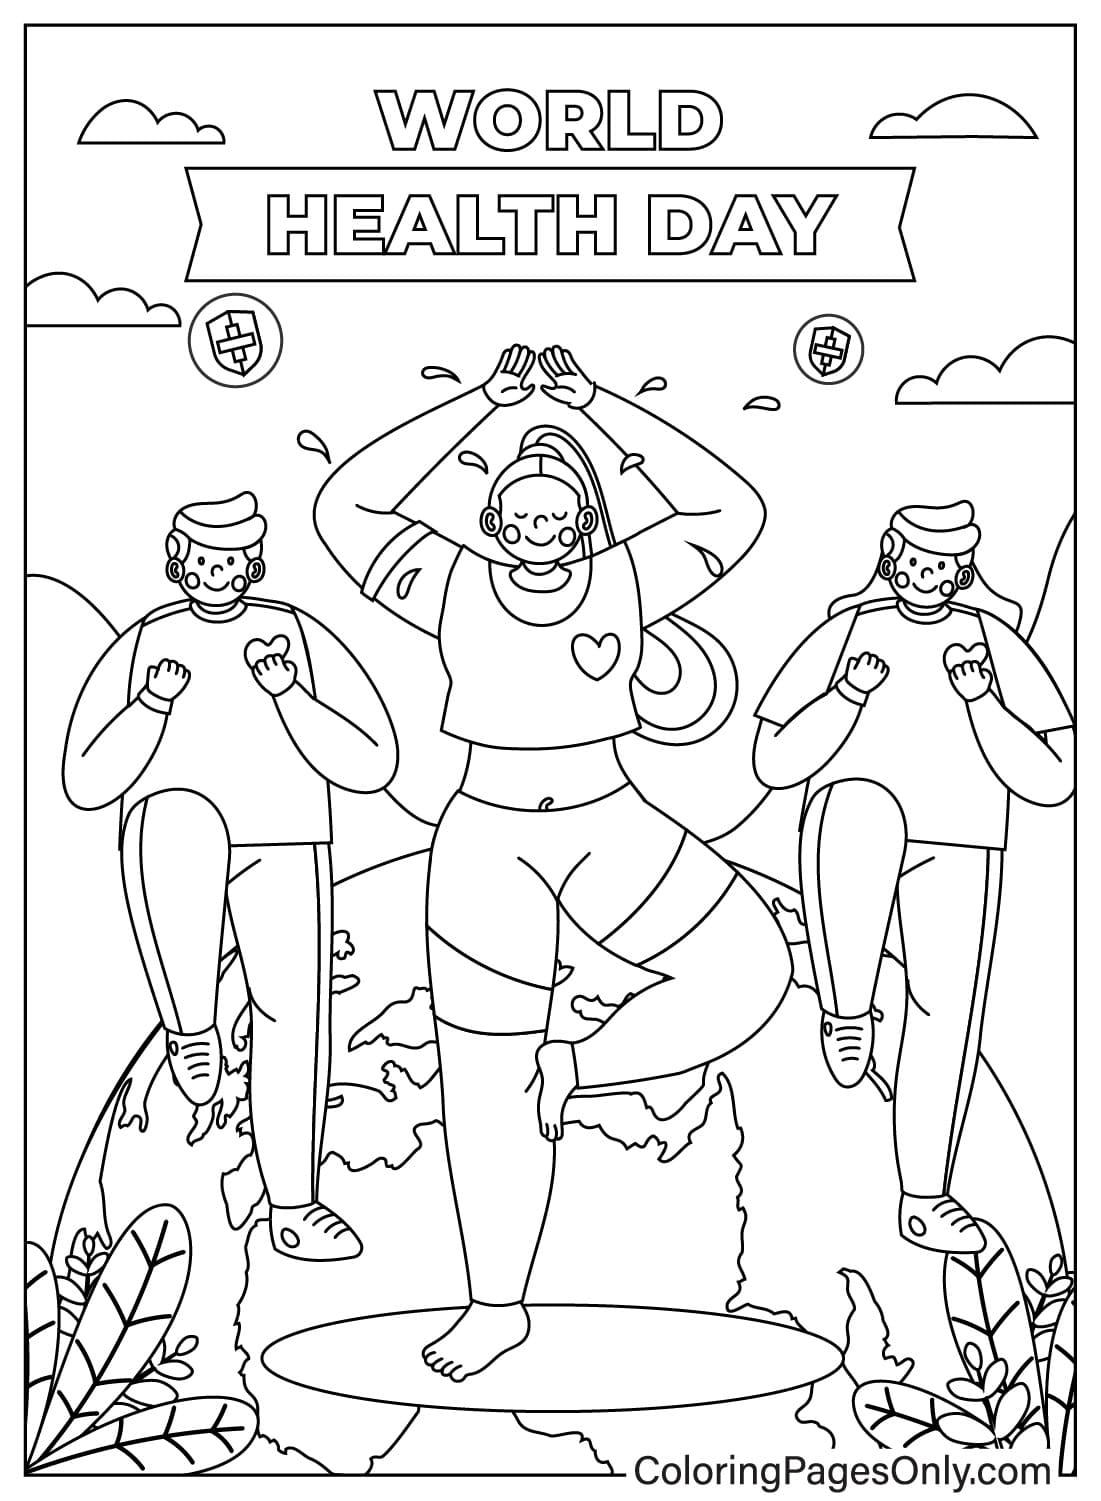 Página para colorear del Día Mundial de la Salud para niños del Día Mundial de la Salud